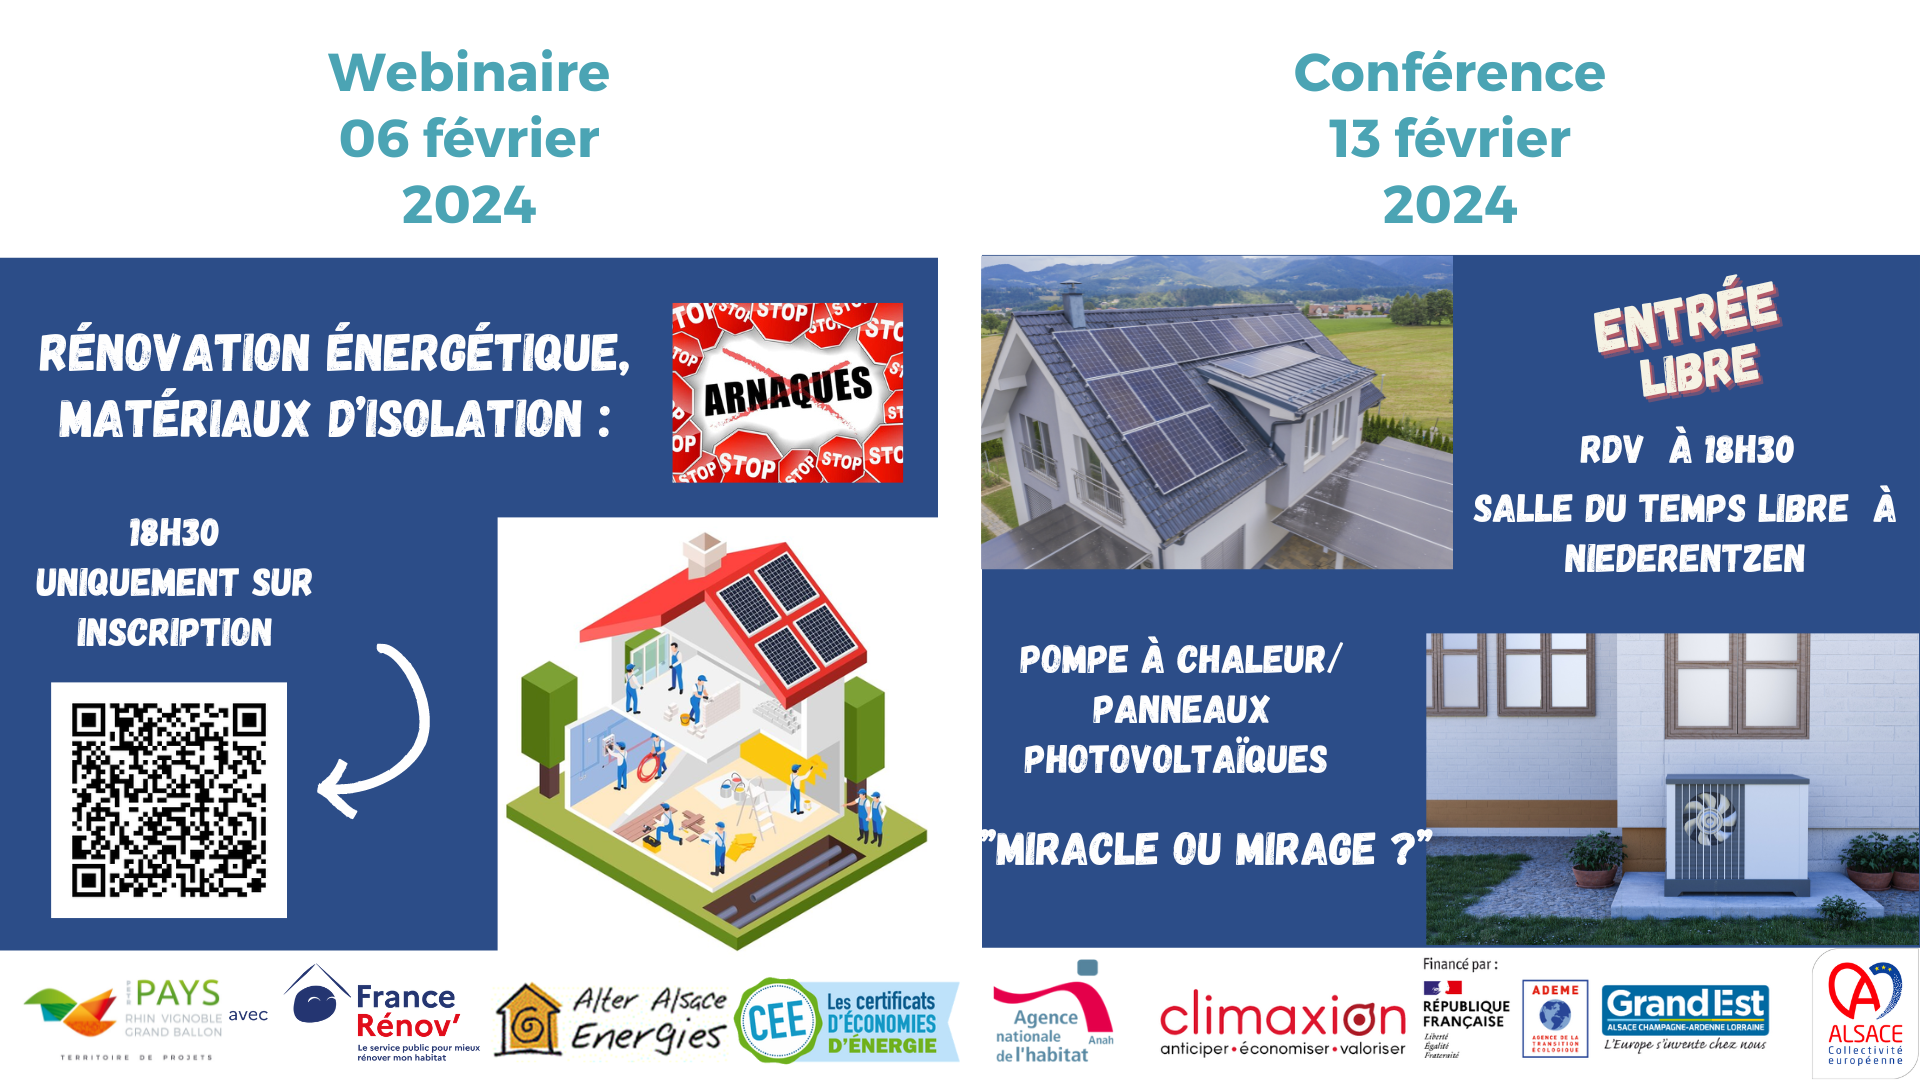 Participez aux animations gratuites organisées par l’Espace Conseil France Rénov du PETR du Pays Rhin Vignoble Grand Ballon (RVGB) en partenariat avec l’Association Alter Alsace Energies (association à but non lucratif).